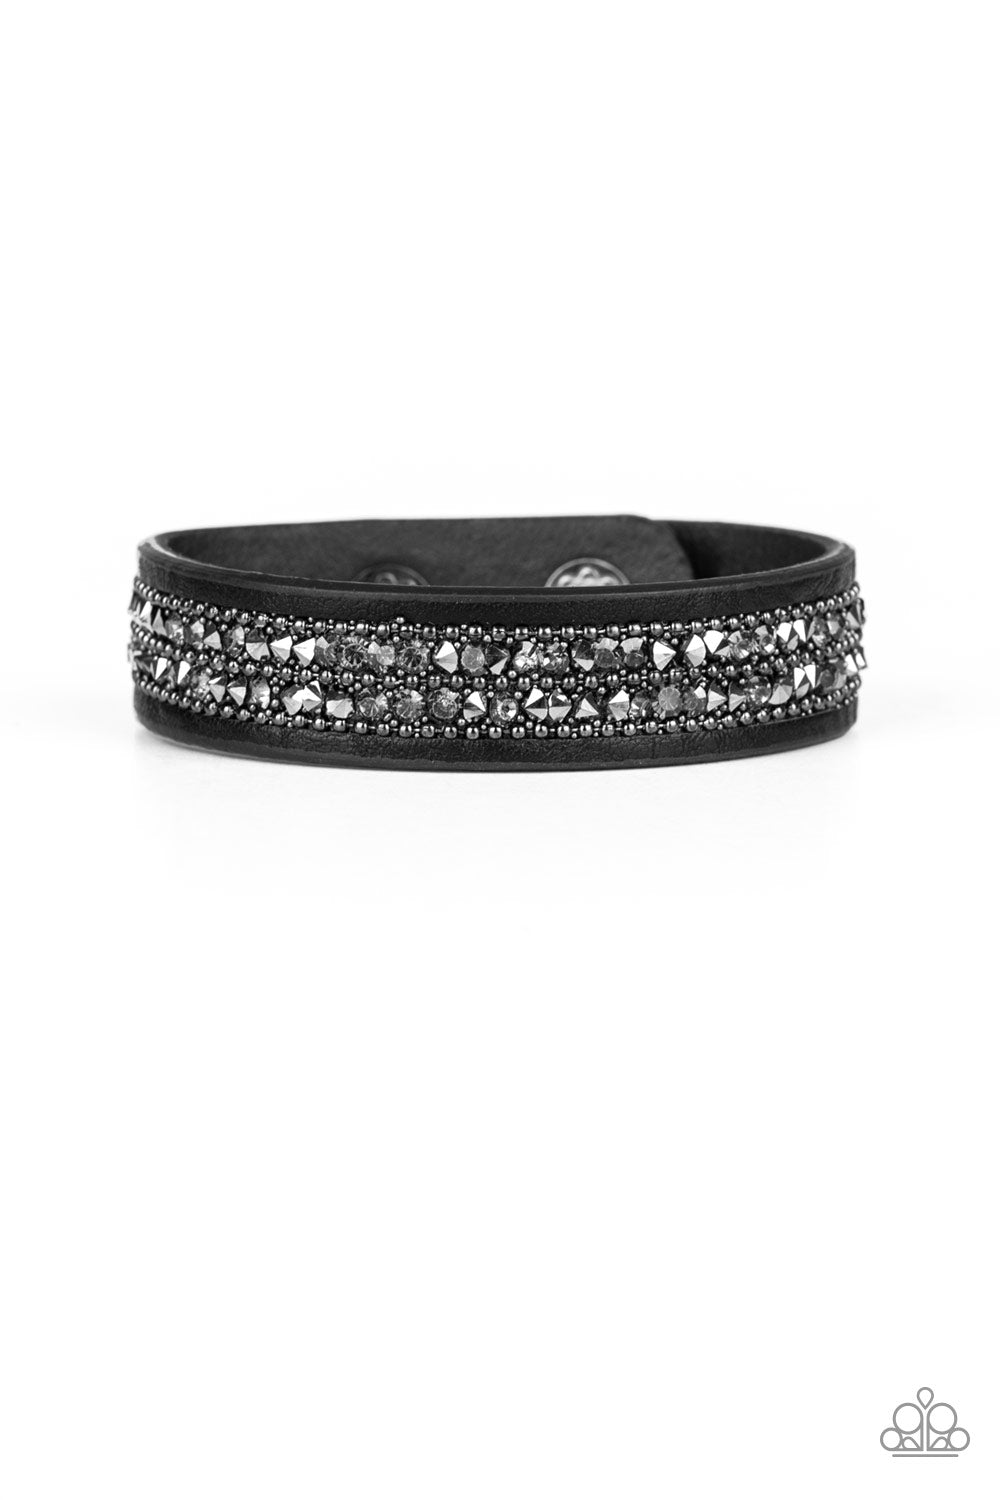 Paparazzi Crunch Time - Black - Leather - Glistening Gunmetal Ball Chain & Rhinestones - Bracelet - $5 Jewelry with Ashley Swint